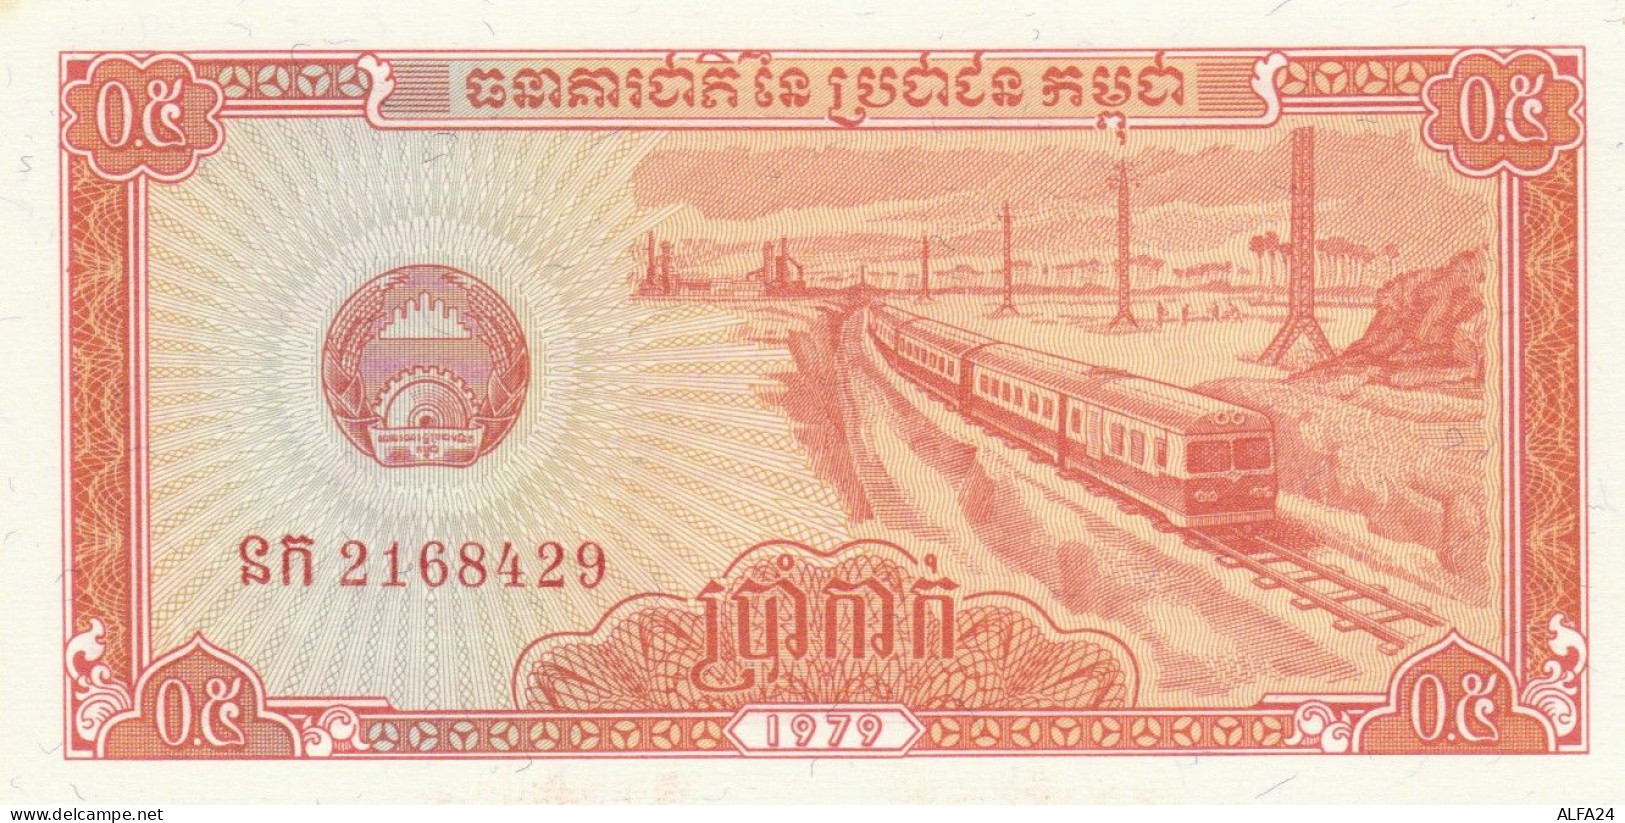 BANCONOTA CAMBOGIA UNC (MK551 - Cambodge